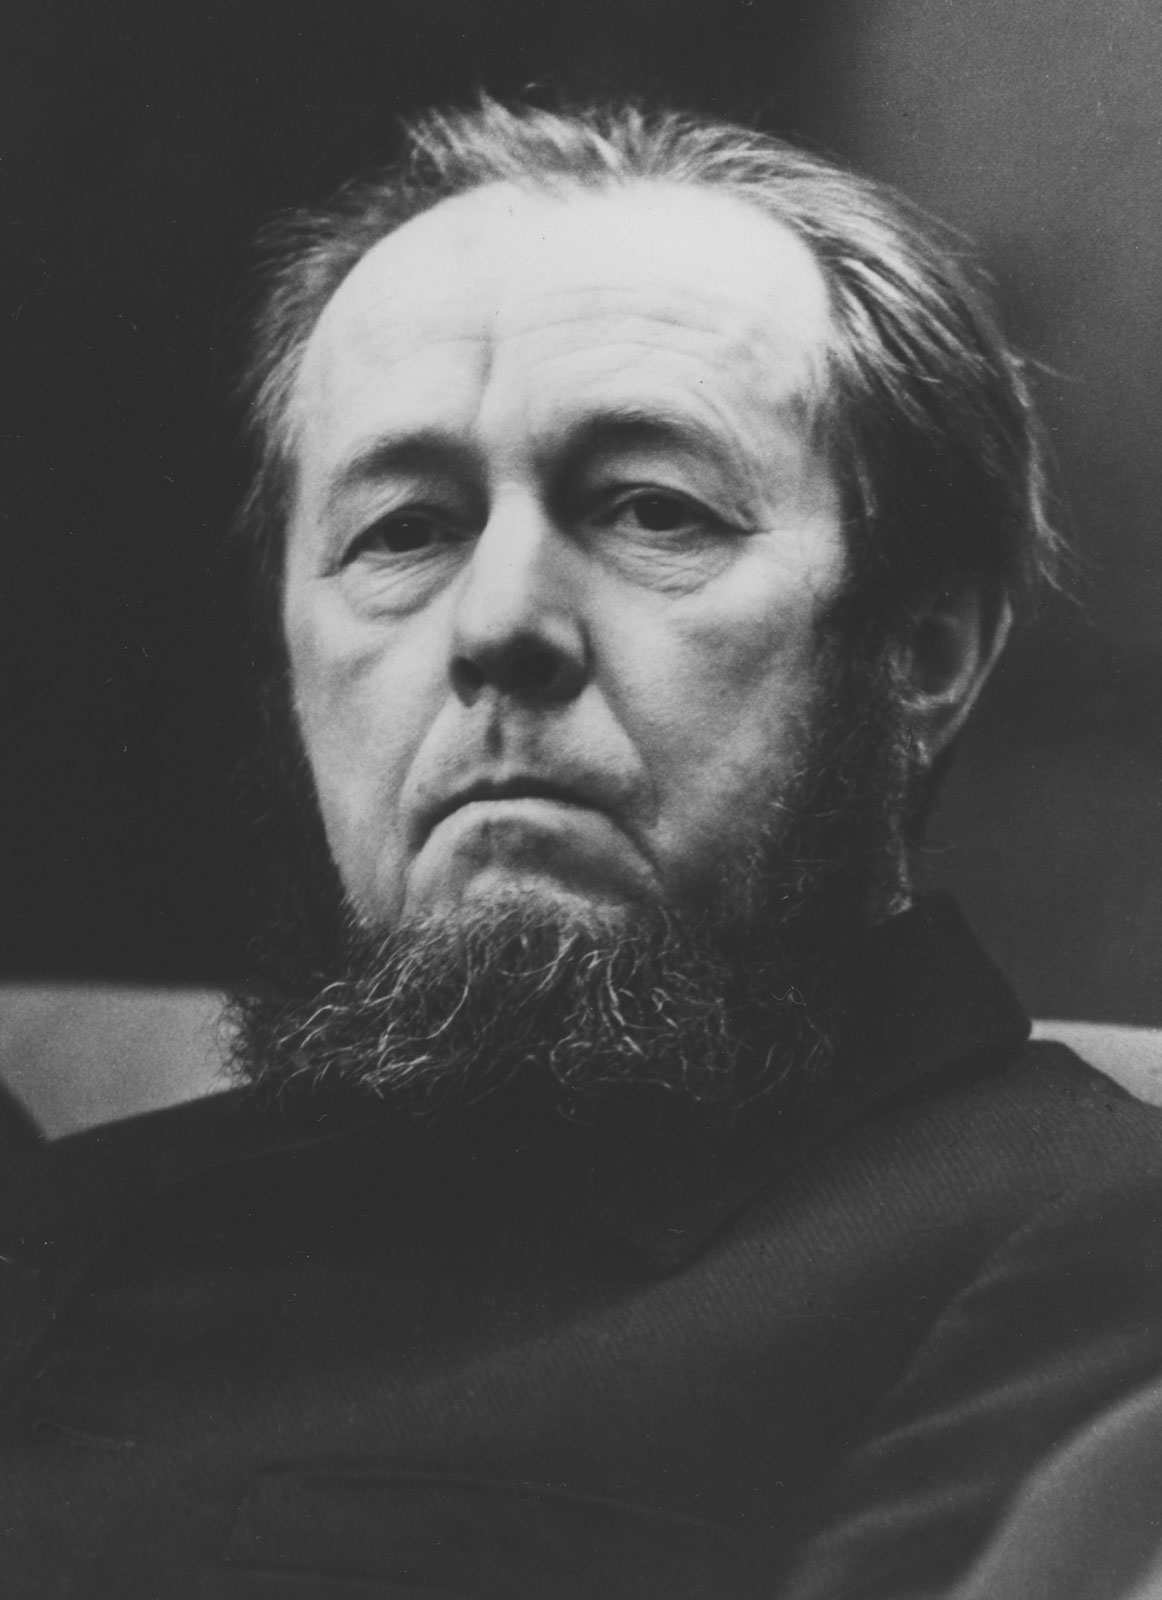 Aleksandr I. Solzhenitsyn